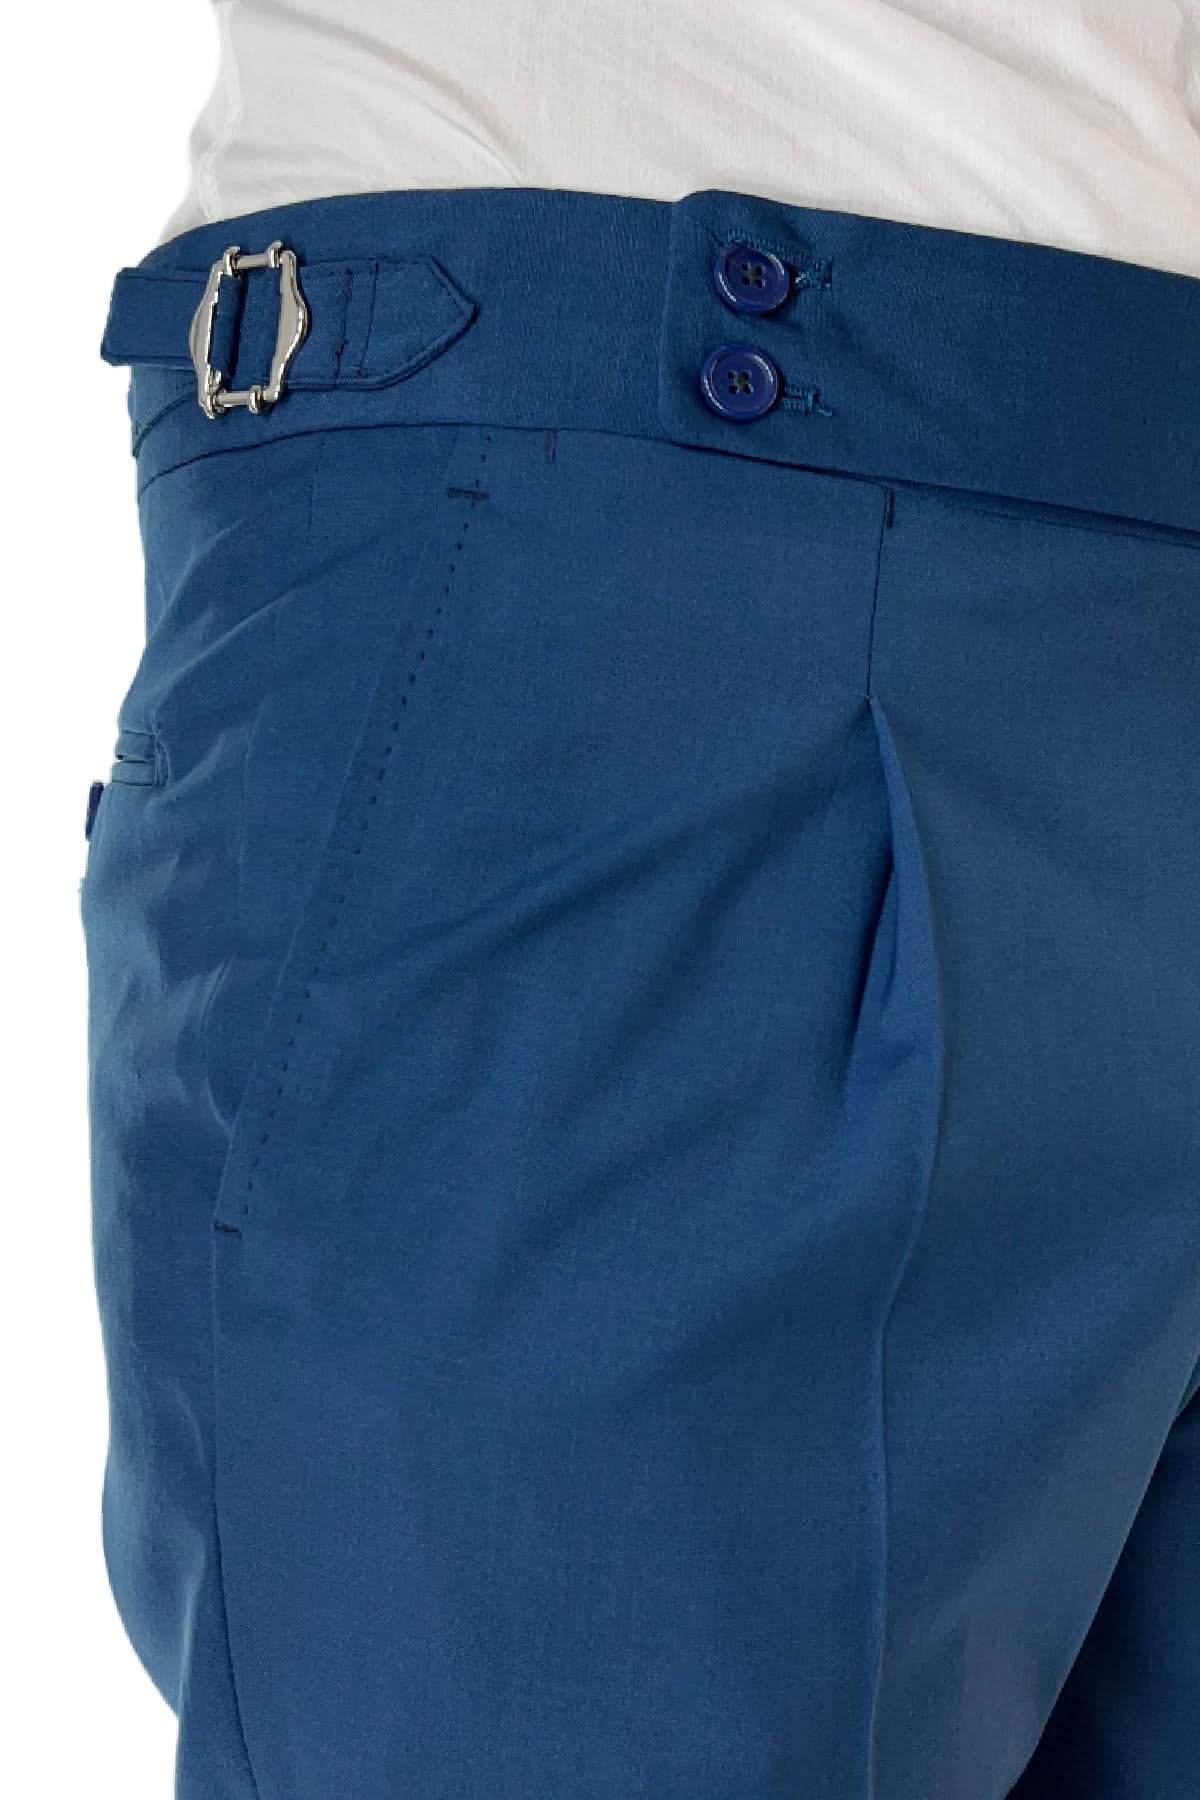 Pantalone uomo royal blu in fresco lana tinta unita vita alta con pinces fibbie laterali e risvolto 4cm